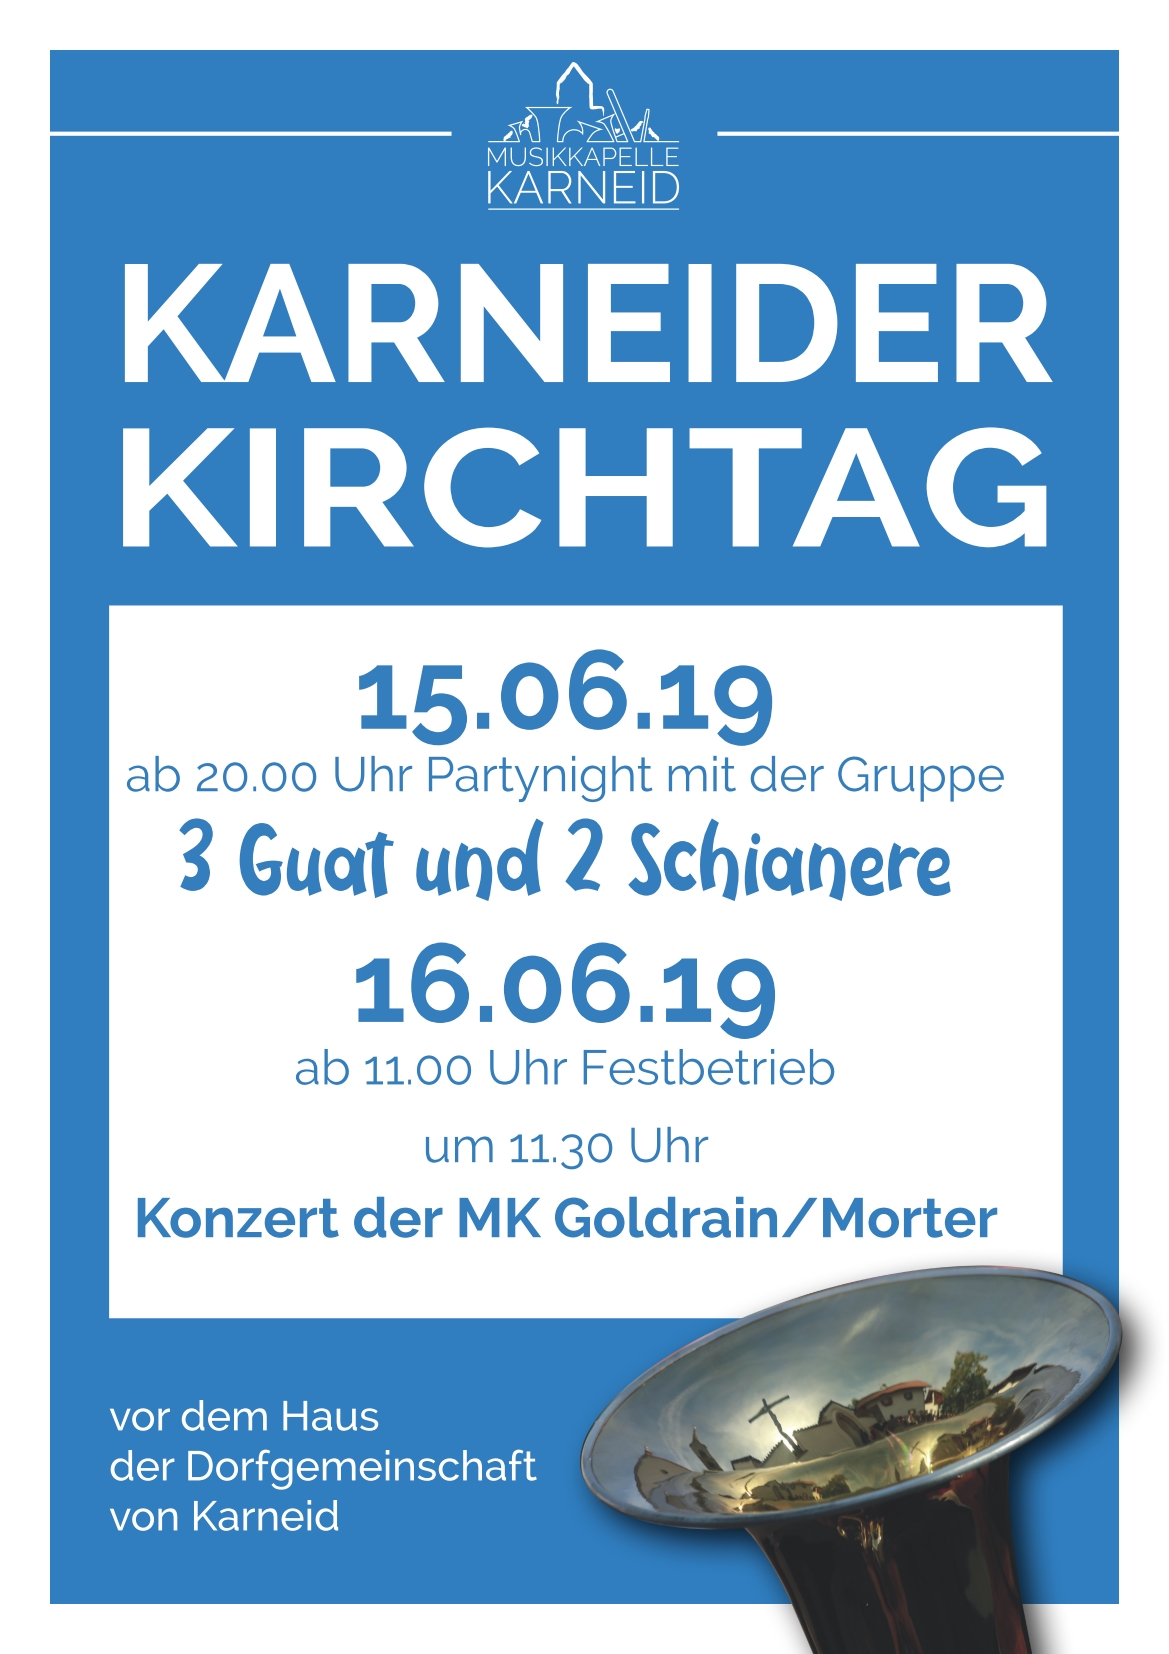 Karneider Kirchtag 2019